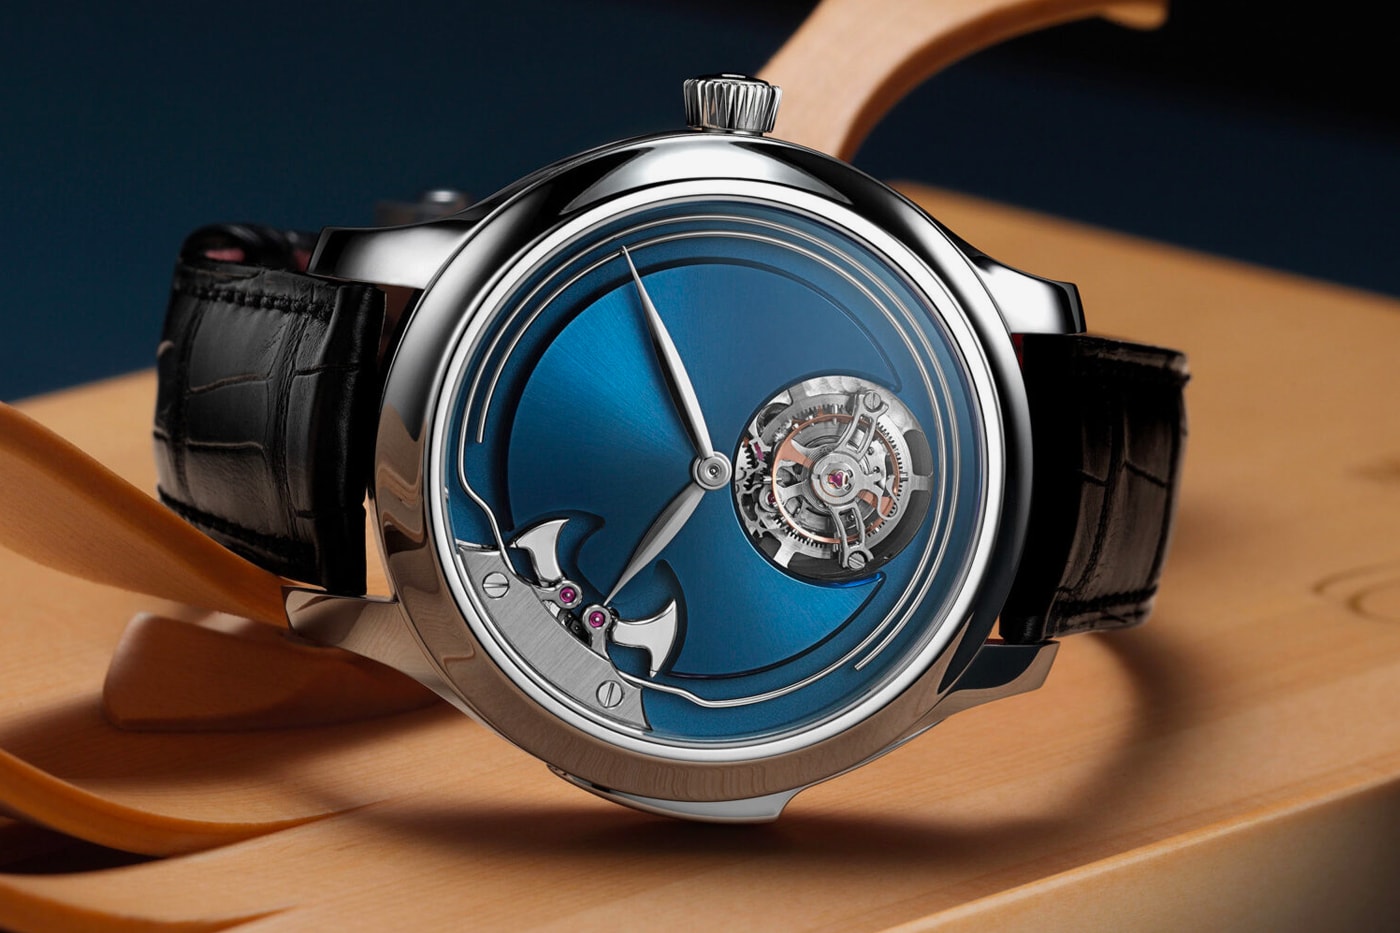 Endeavour Concept Minute Repeater Tourbillon Часы H. Moser & Cie, швейцарские немецкие механические часы собственного производства 